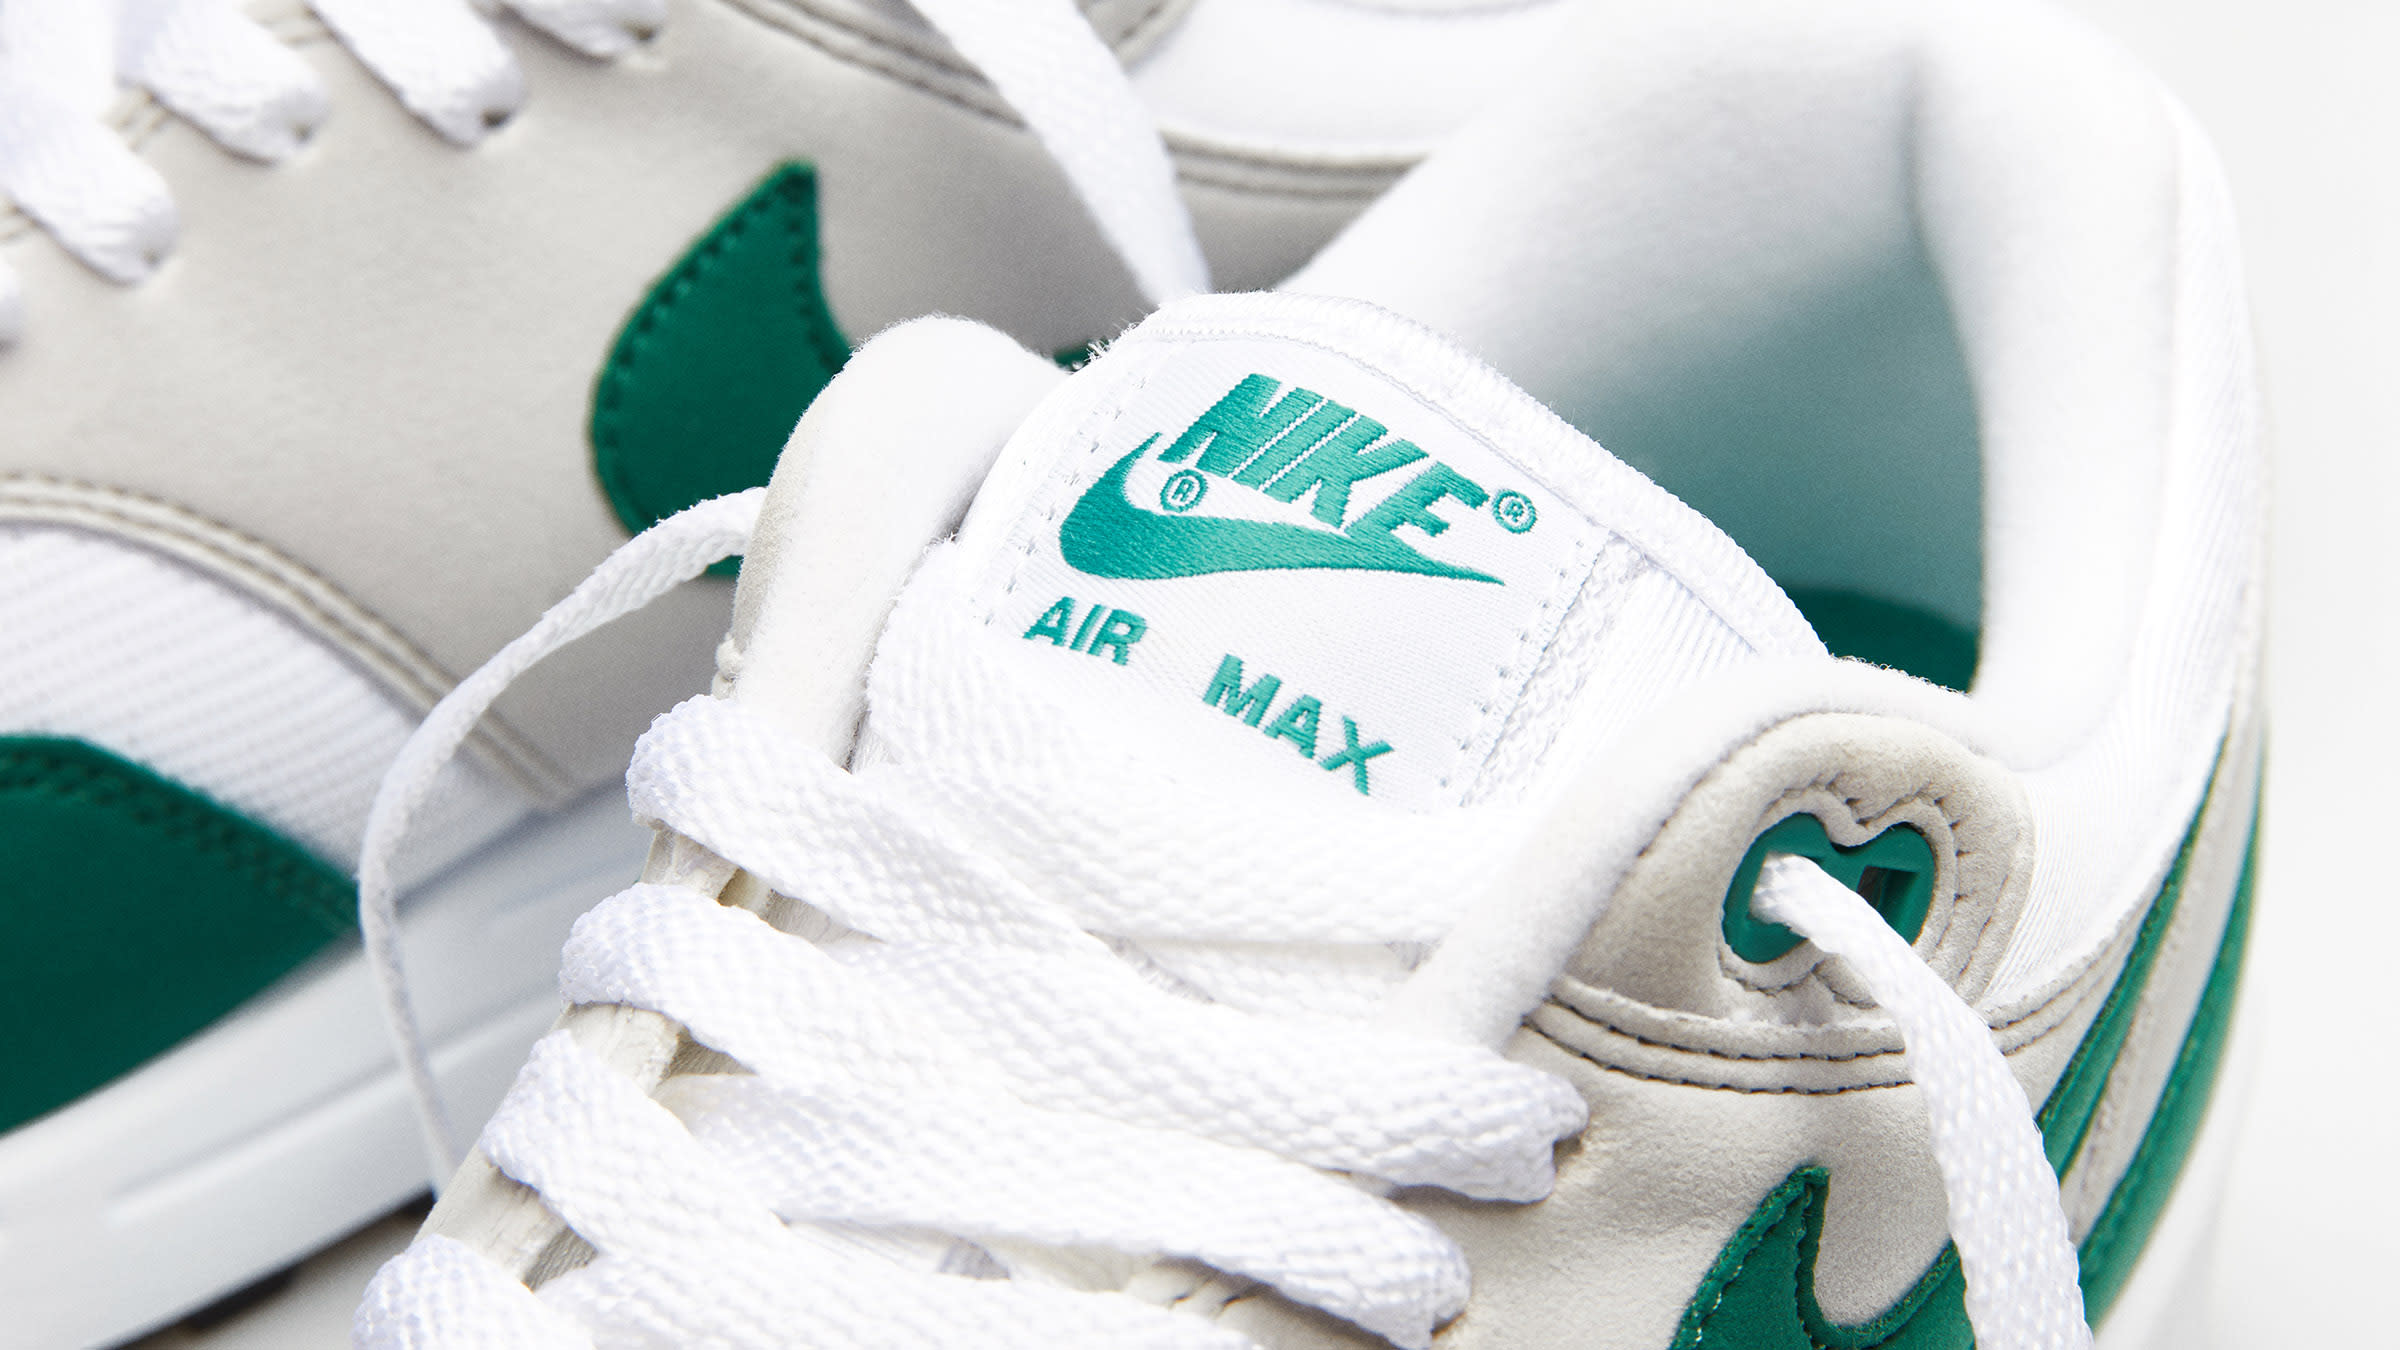 Nike Air Max 1 'Evergreen